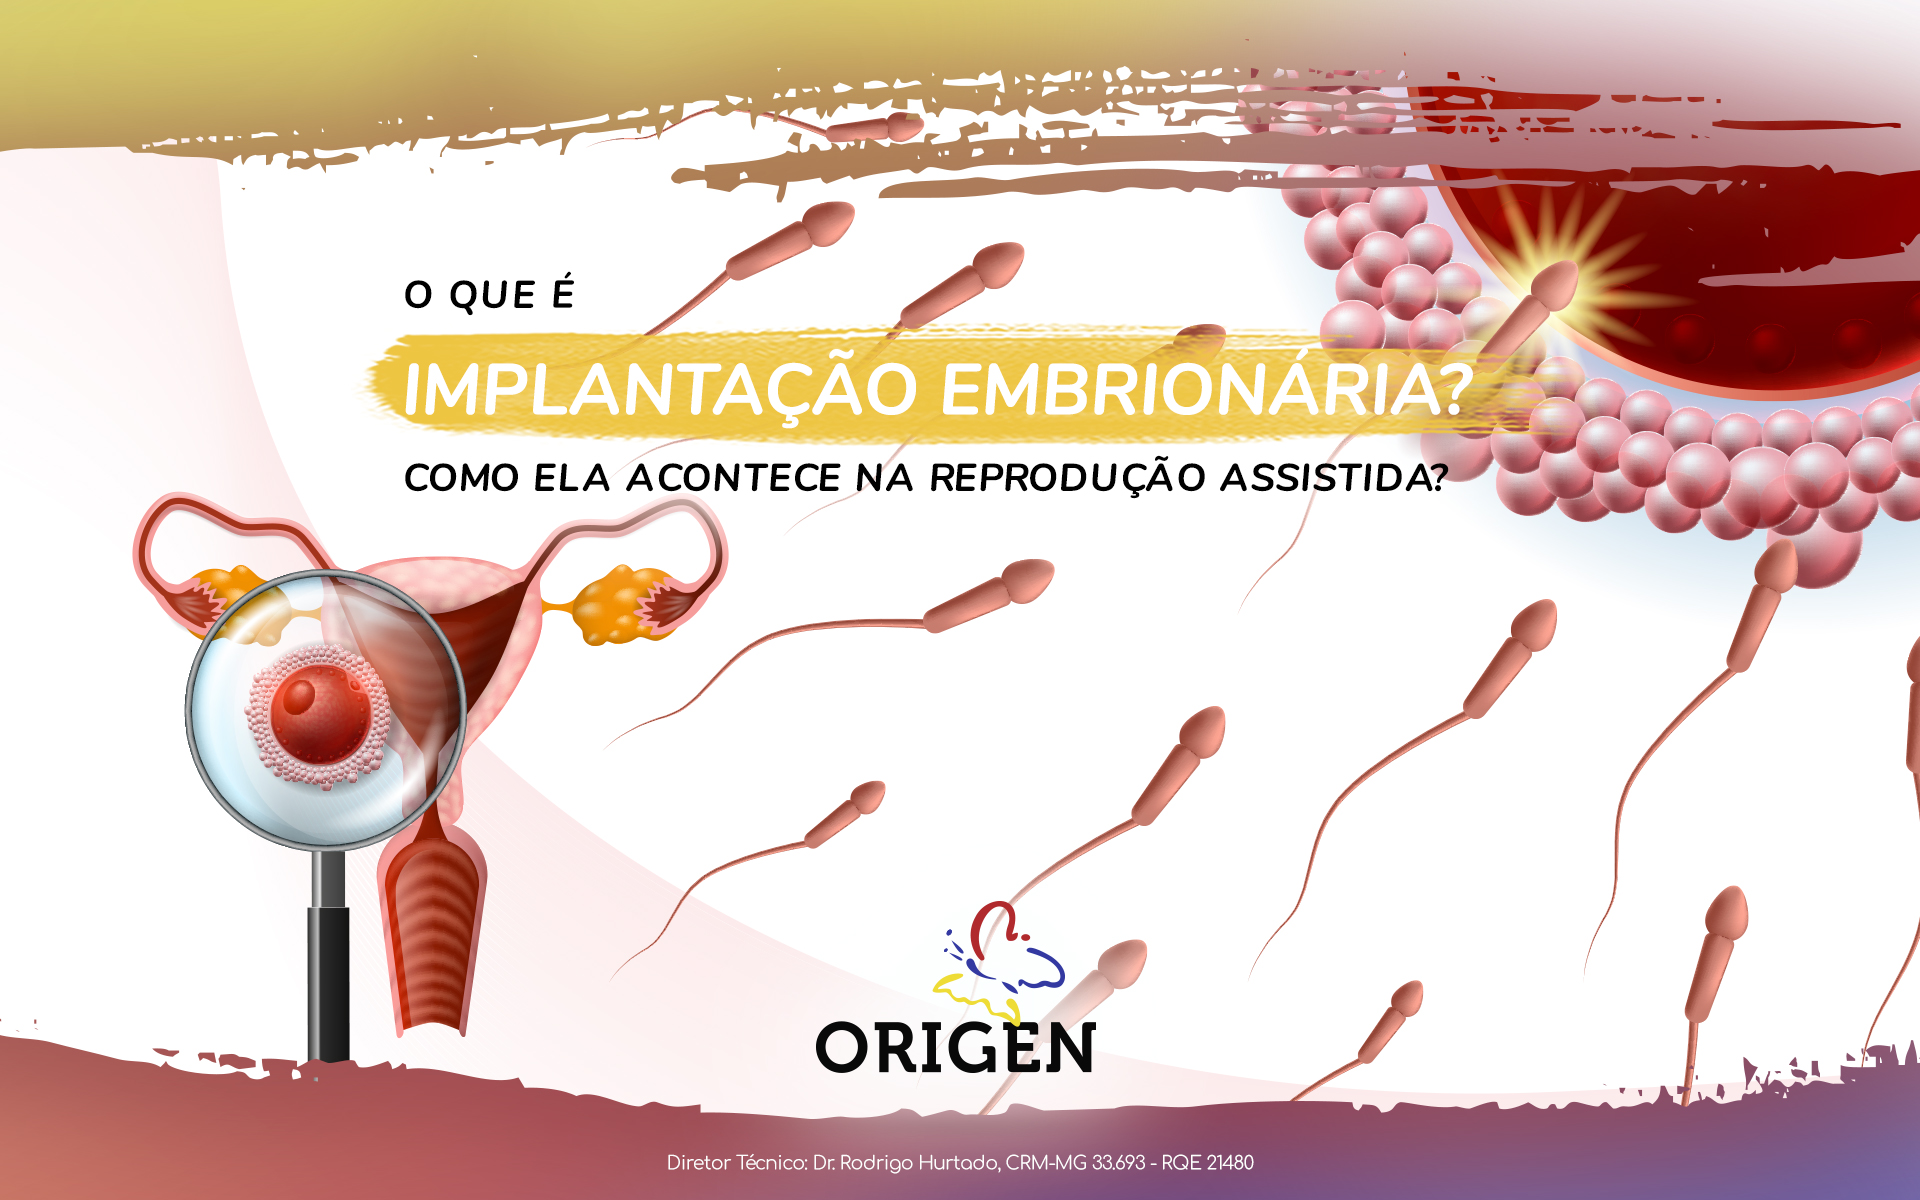 O que é implantação embrionária? Como ela acontece na reprodução assistida?